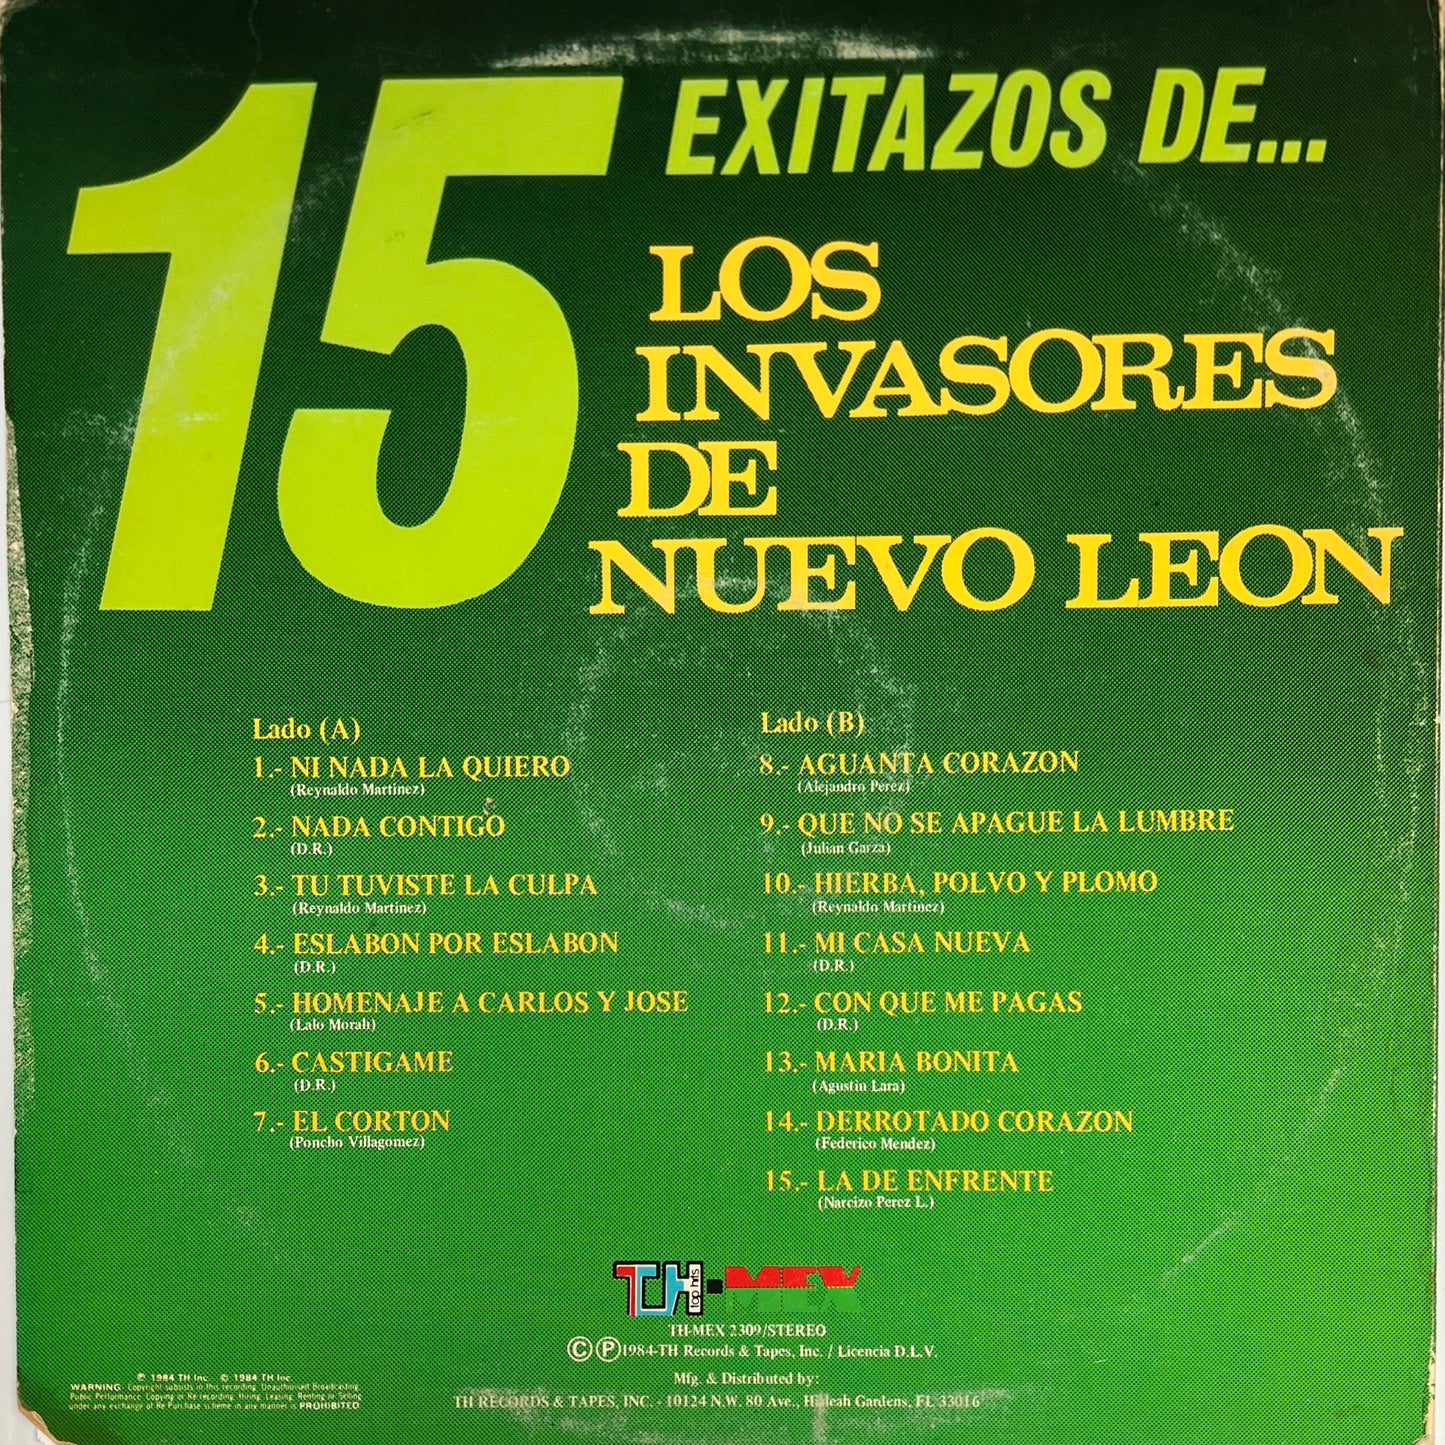 Los Invasores De Nuevo Leon - 15 Exitazos De... (Open Vinyl)